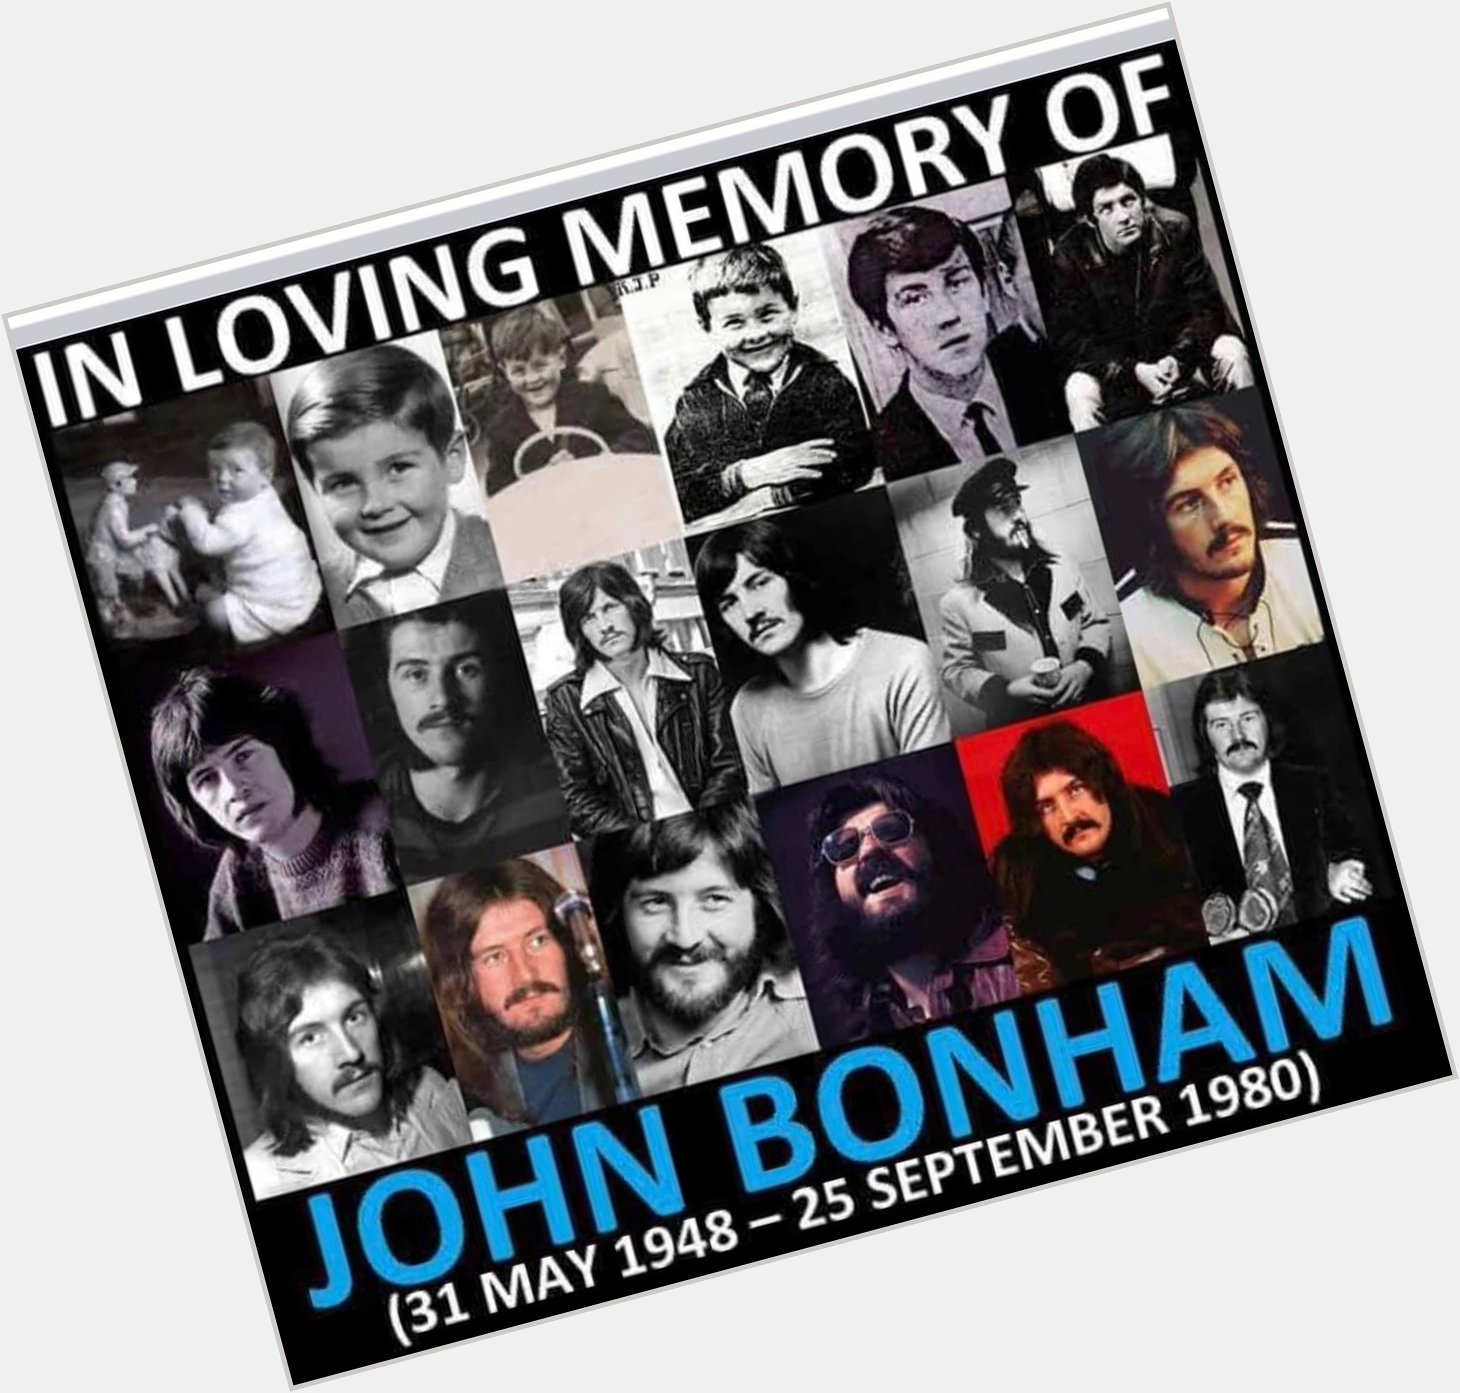 Happy birthday to  John Bonham!
John Bonham!
John Henry Bonham! -Robert Plant 